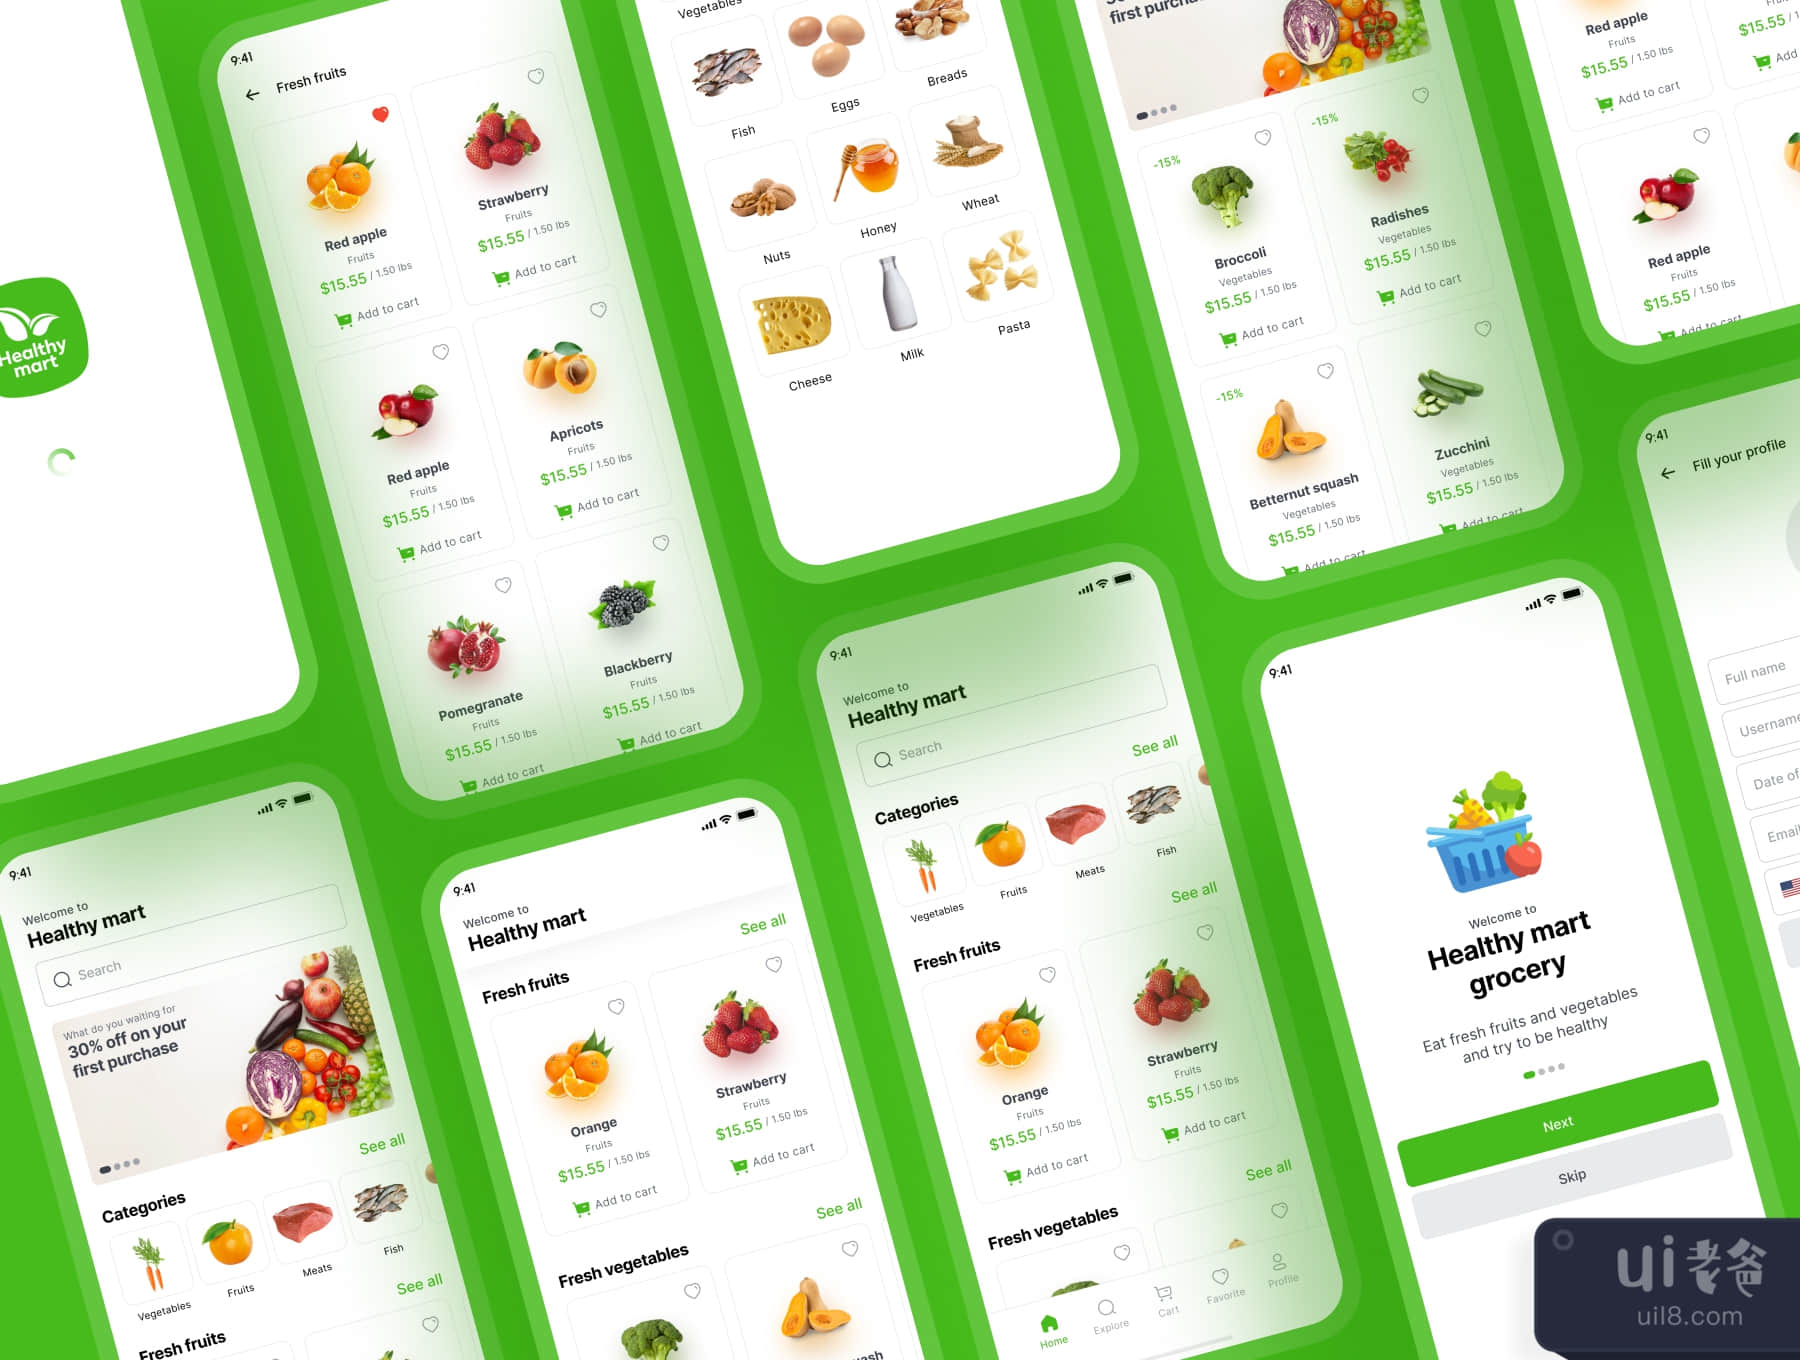 健康超市 - 杂货店应用程序iOS Ui套件 (Healthy Mart - Grocery App iOS Ui Kit)插图2